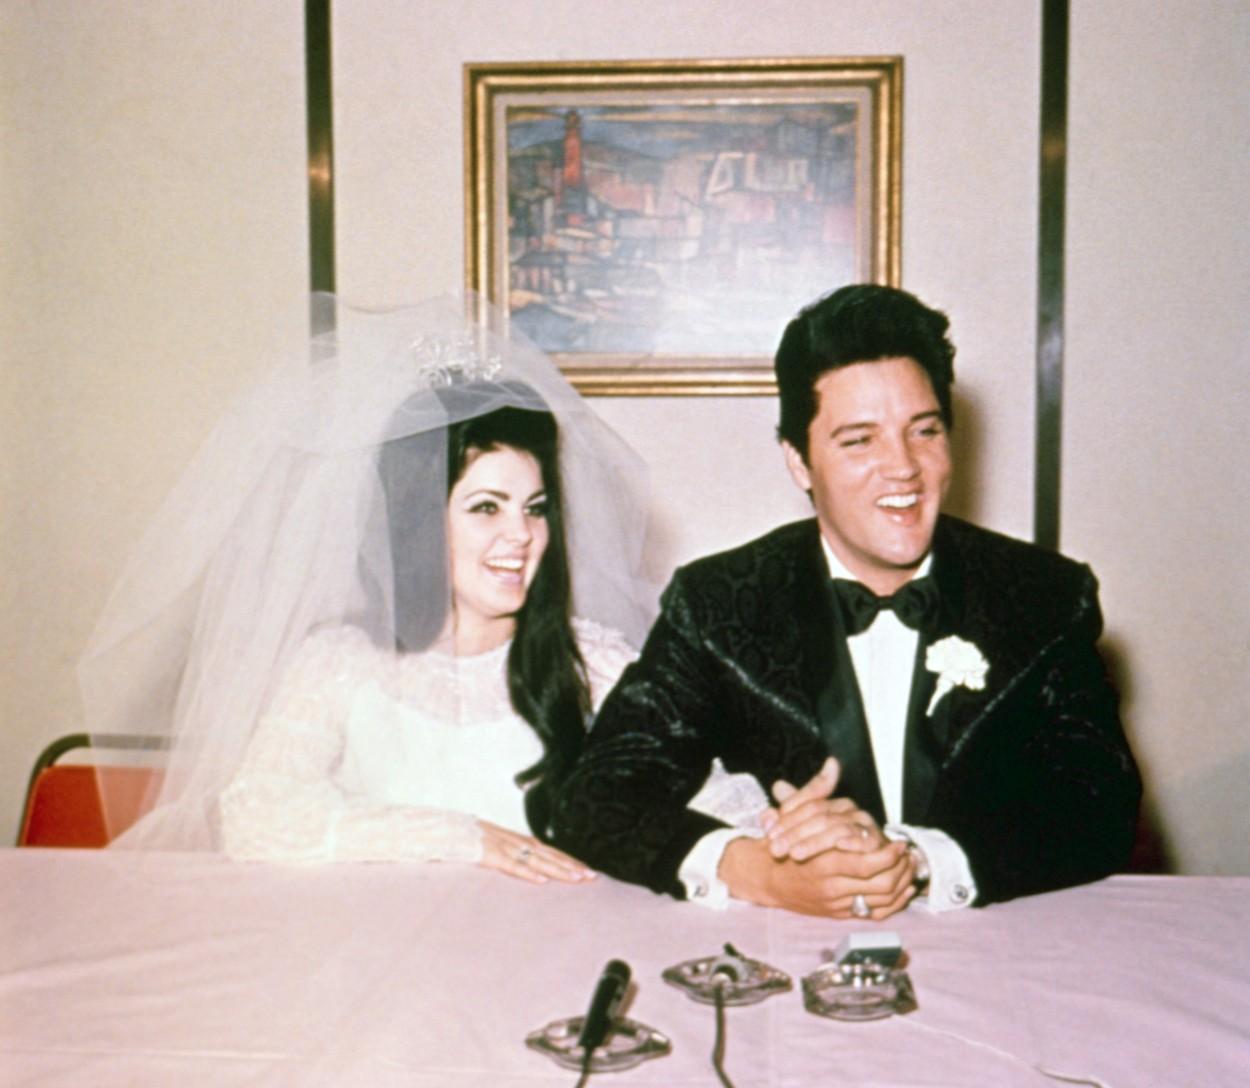 Navarone Garcia s-a căsătorit cu Elisa Achilli. Fiul Priscillei Presley a avut-o alături pe mama sa la marele eveniment